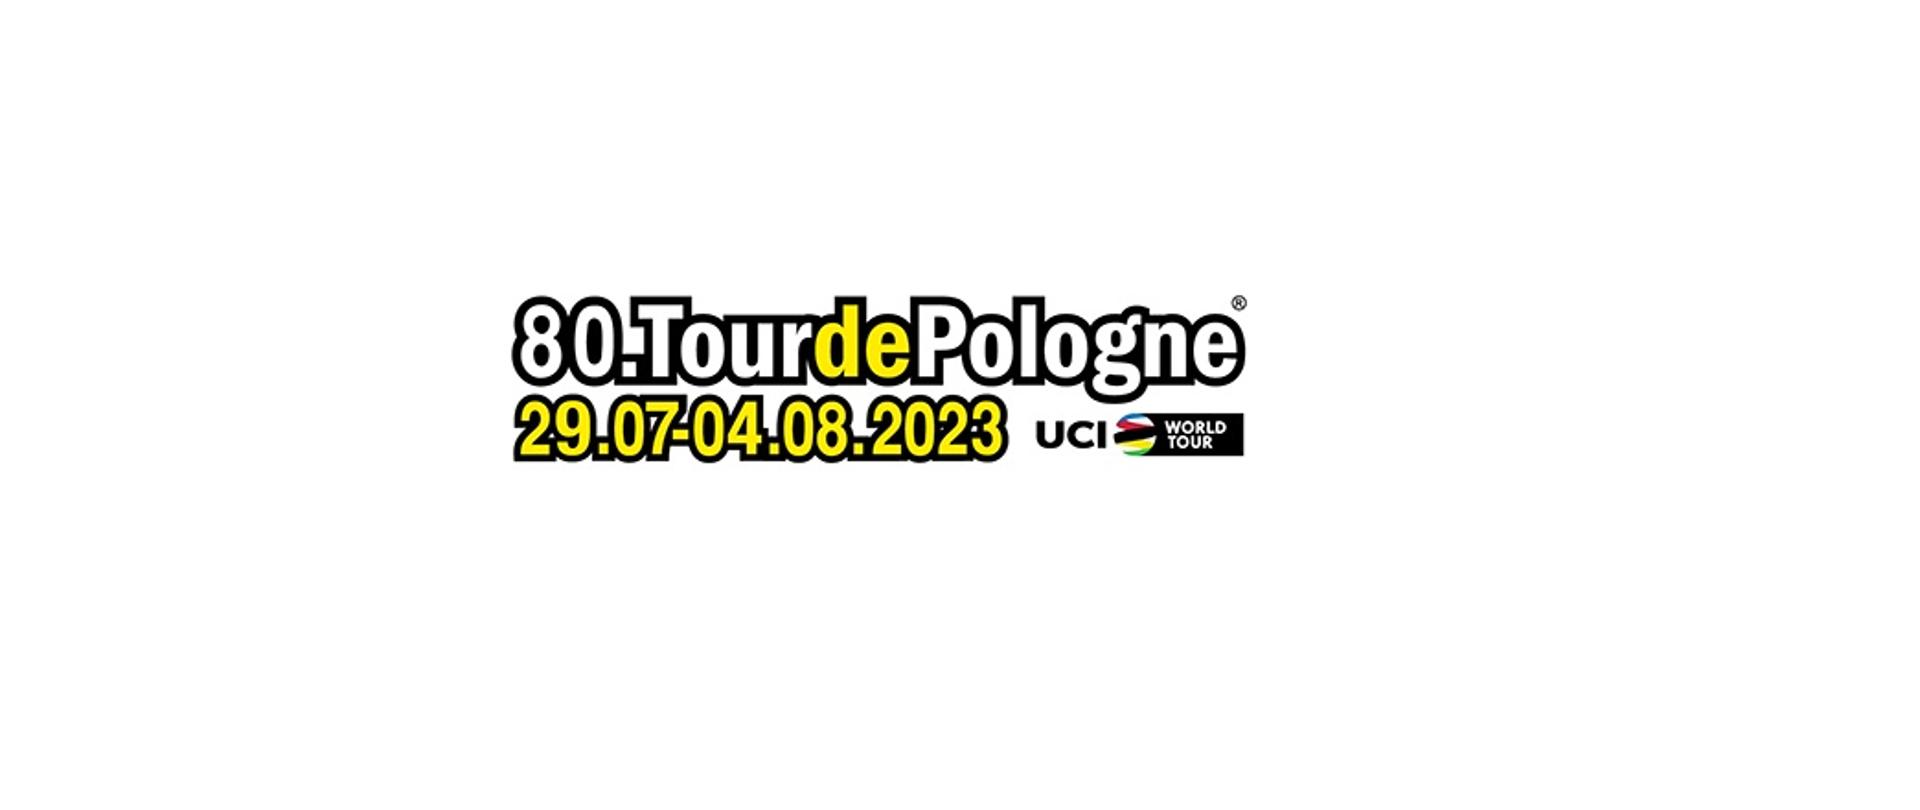 80. Tour de Pologne logo